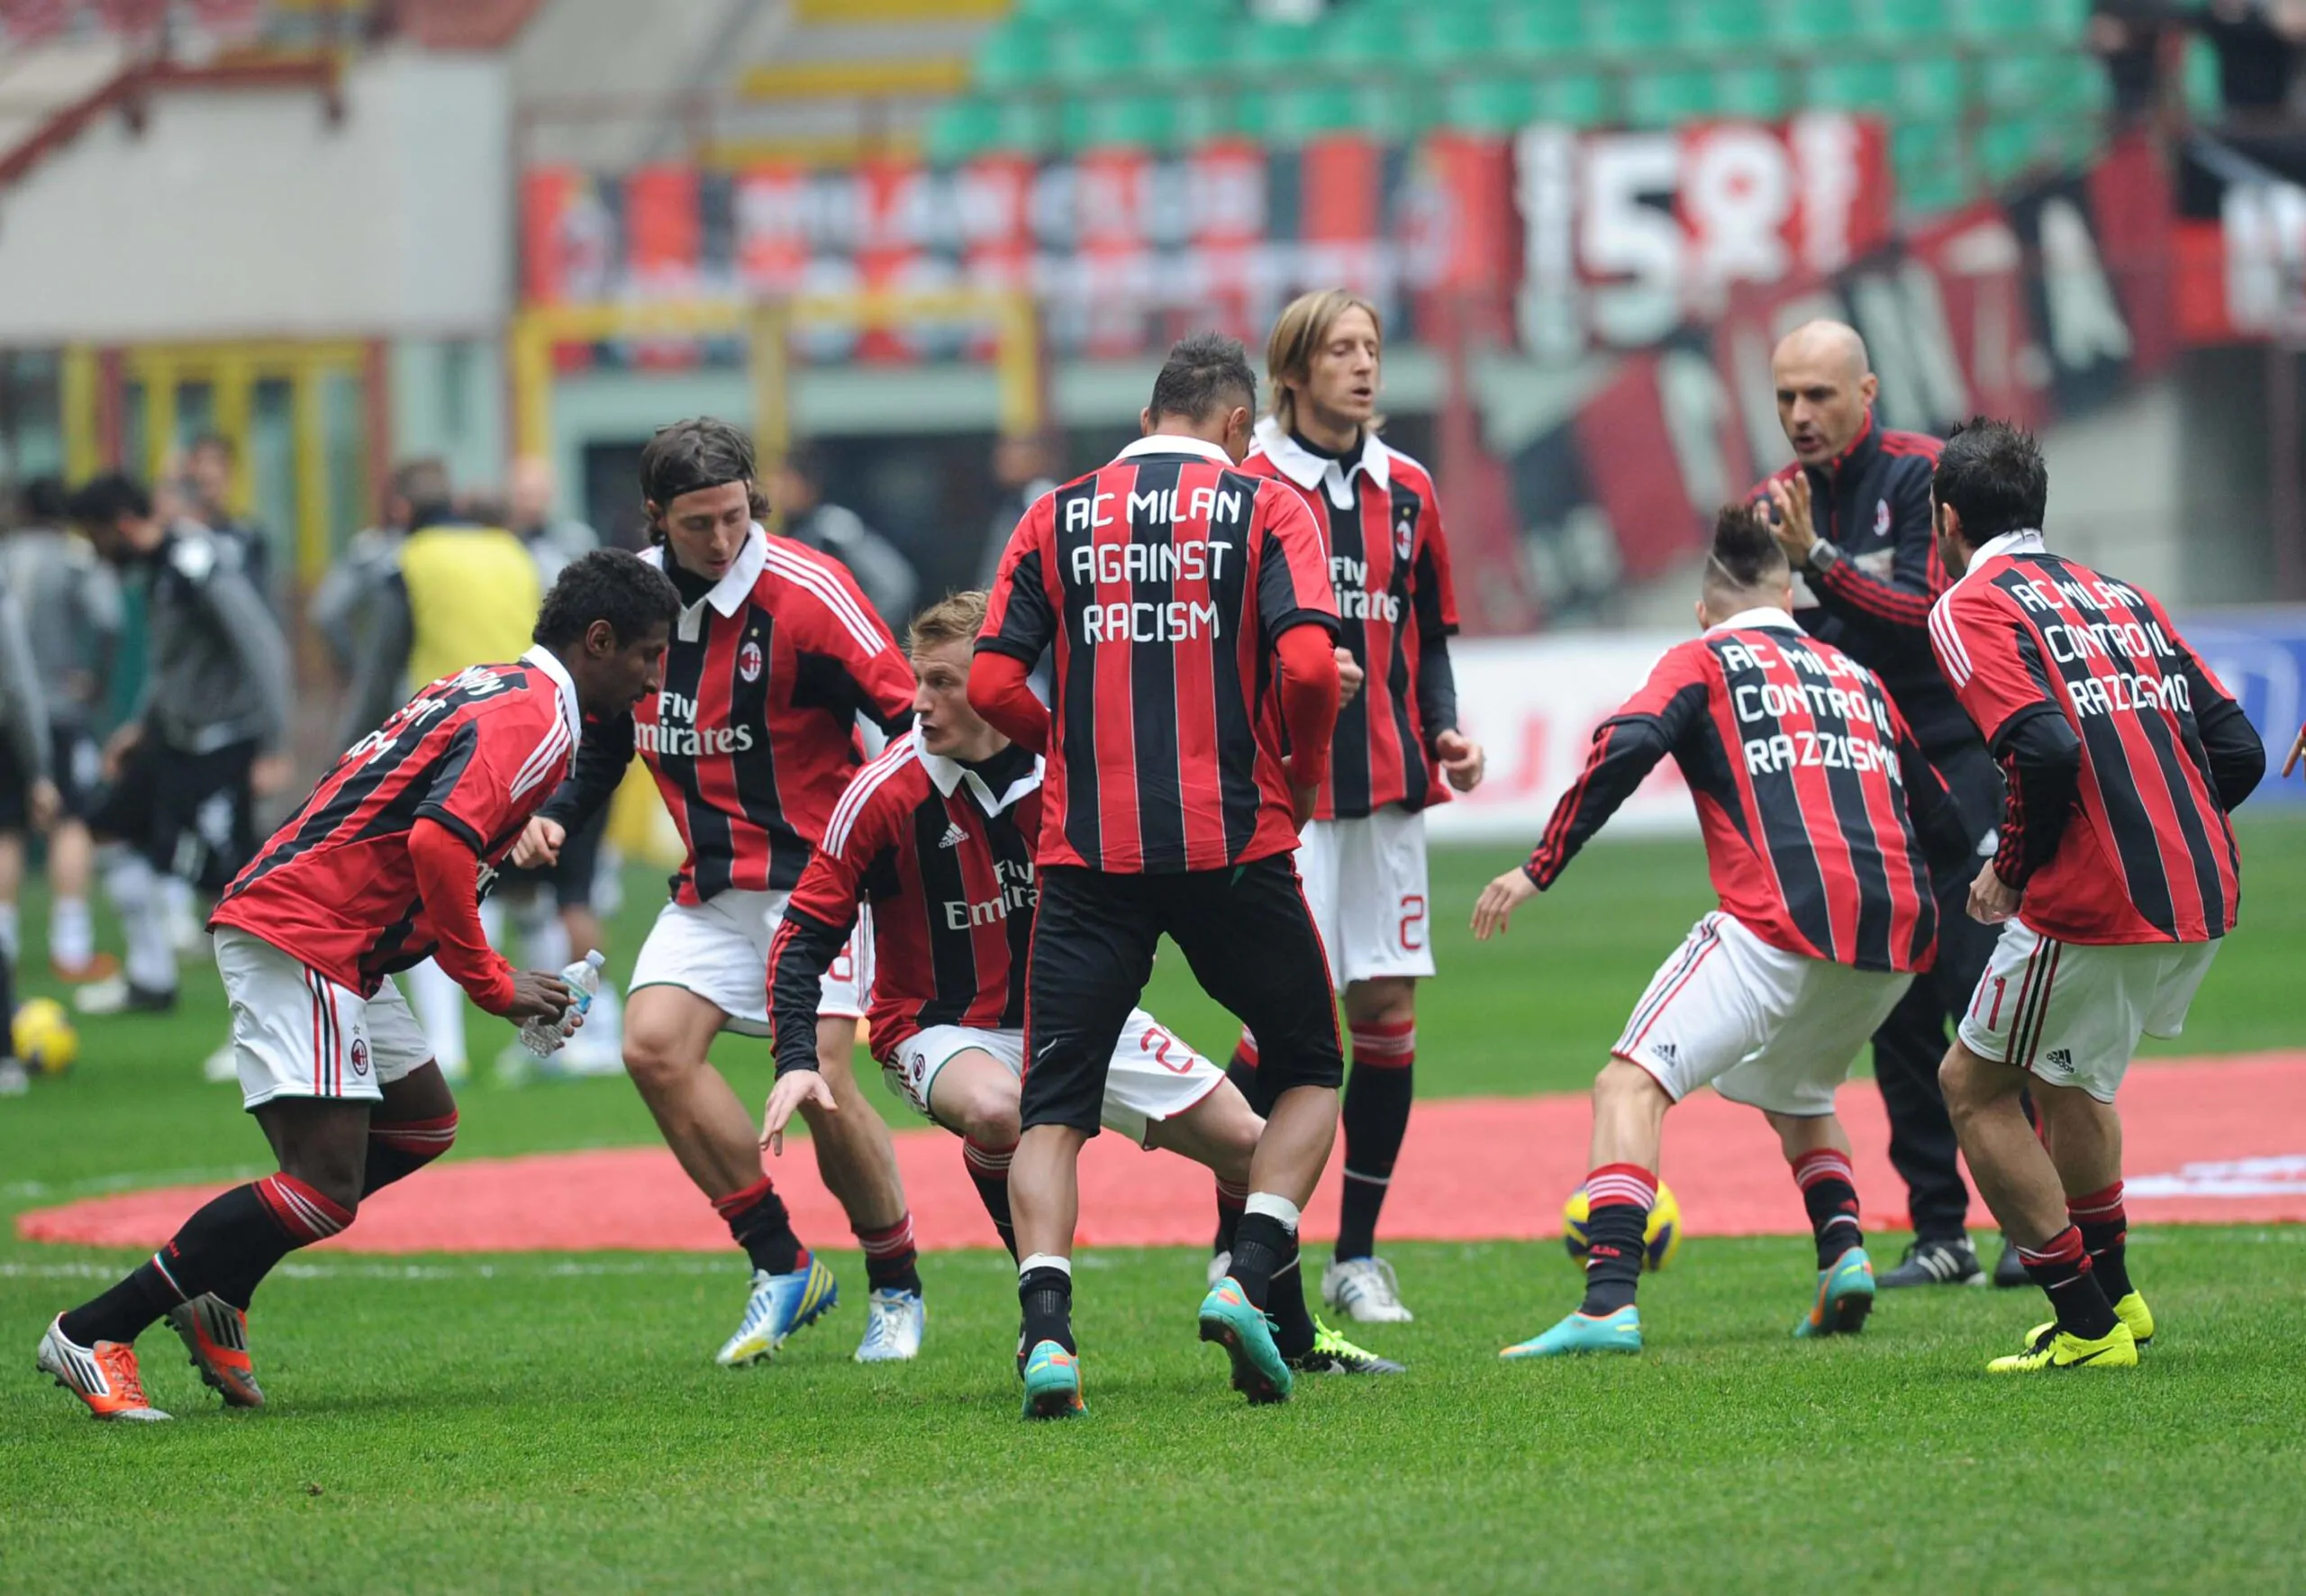 SM FOTO – Il pre-partita rossonero: “AC Milan contro il razzismo”